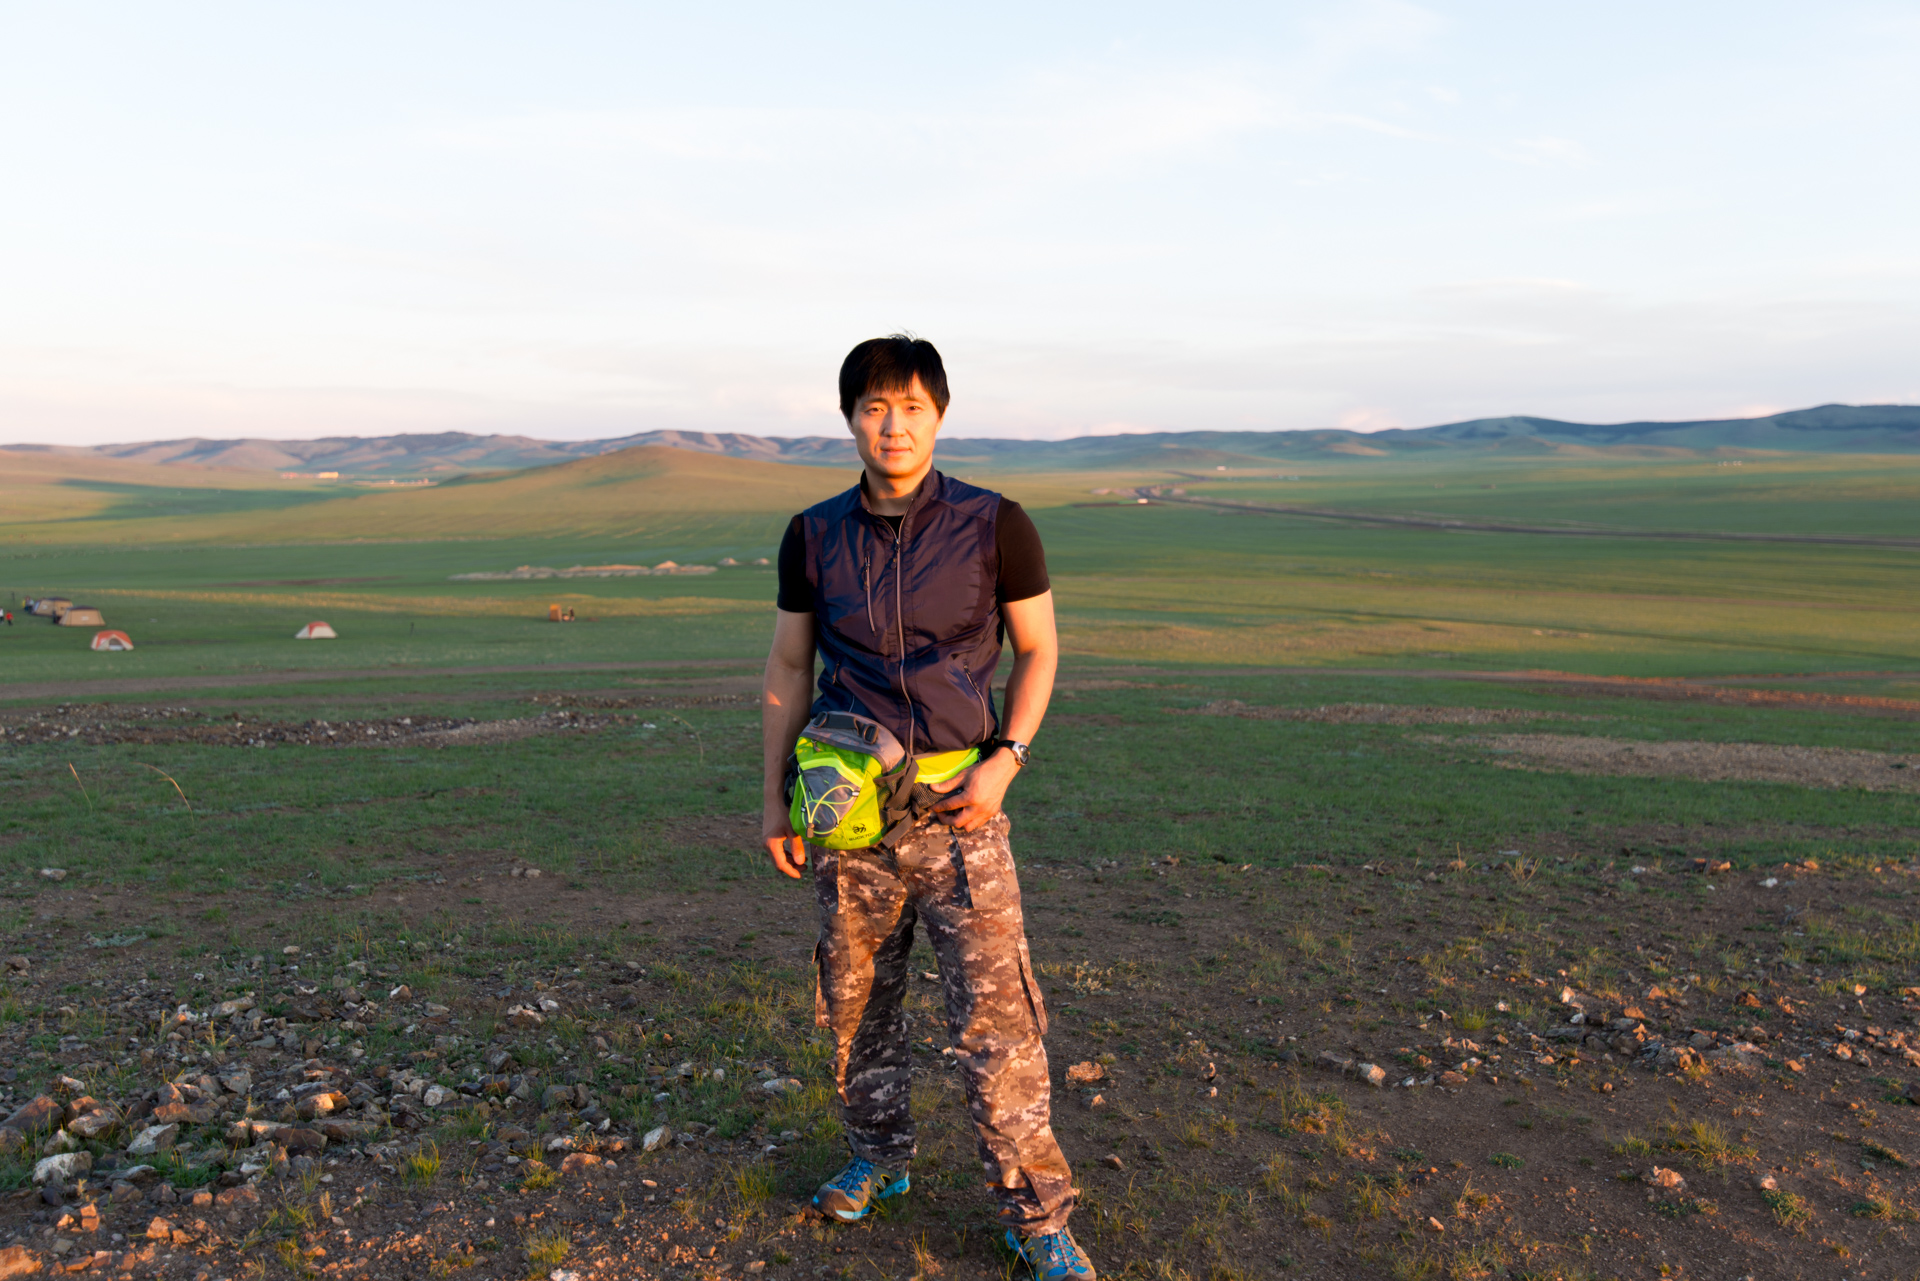 150727_030.jpg : 몽골 학습탐사 2진 사진 7월27일 ...자